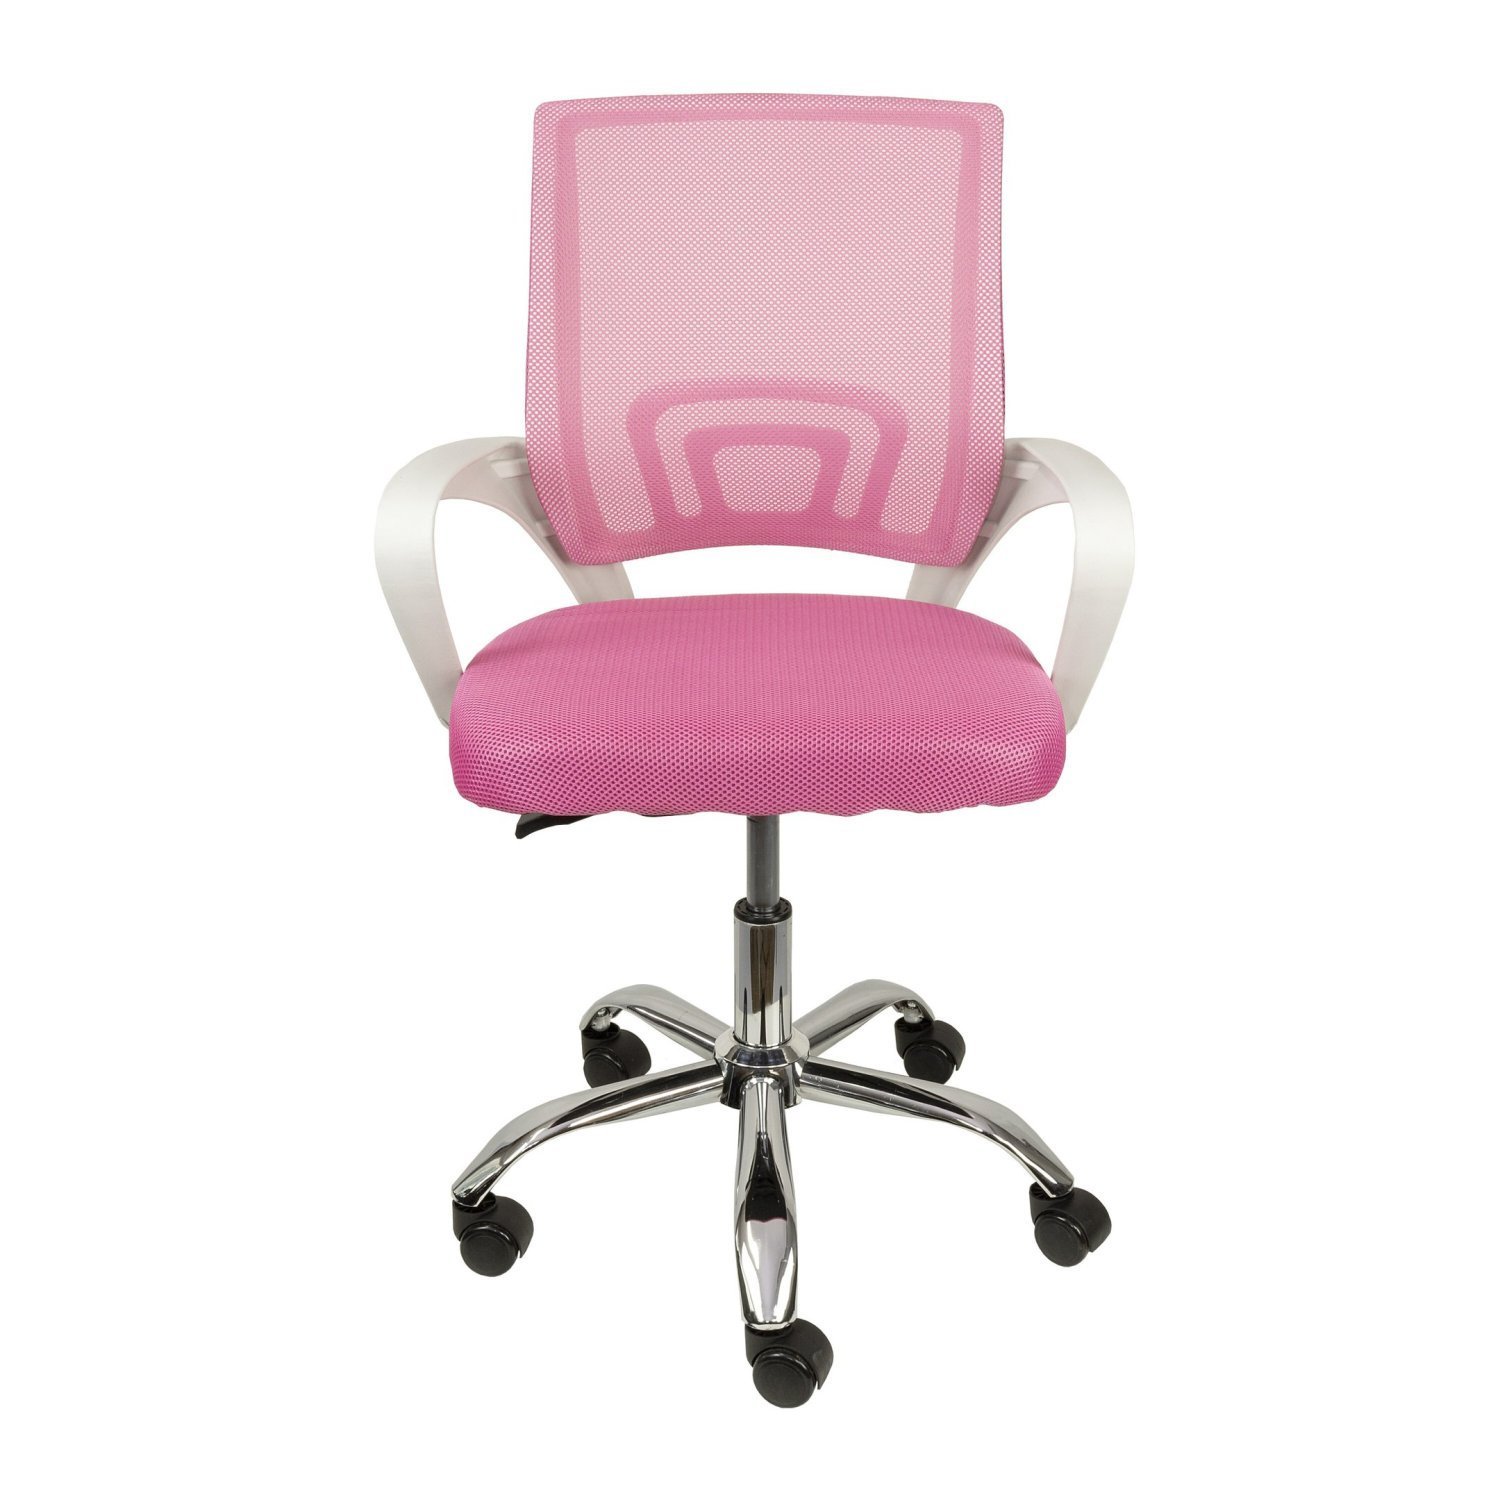 Cadeira para Escritório Diretor Tela Mesh Tok 3310 Or Design - 2